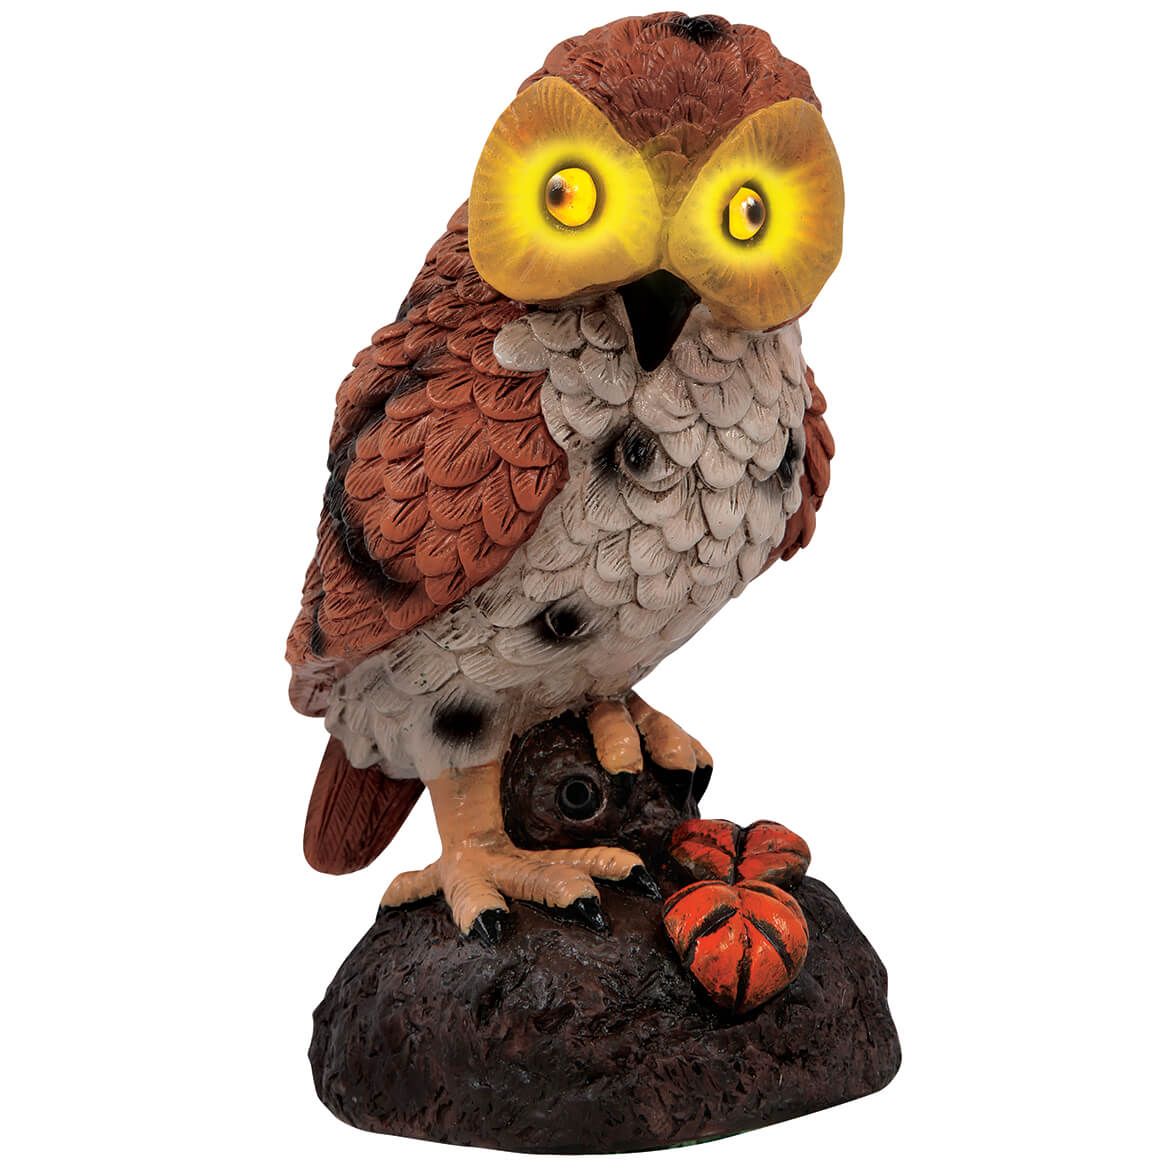 Hooting Garden Owl + '-' + 369702